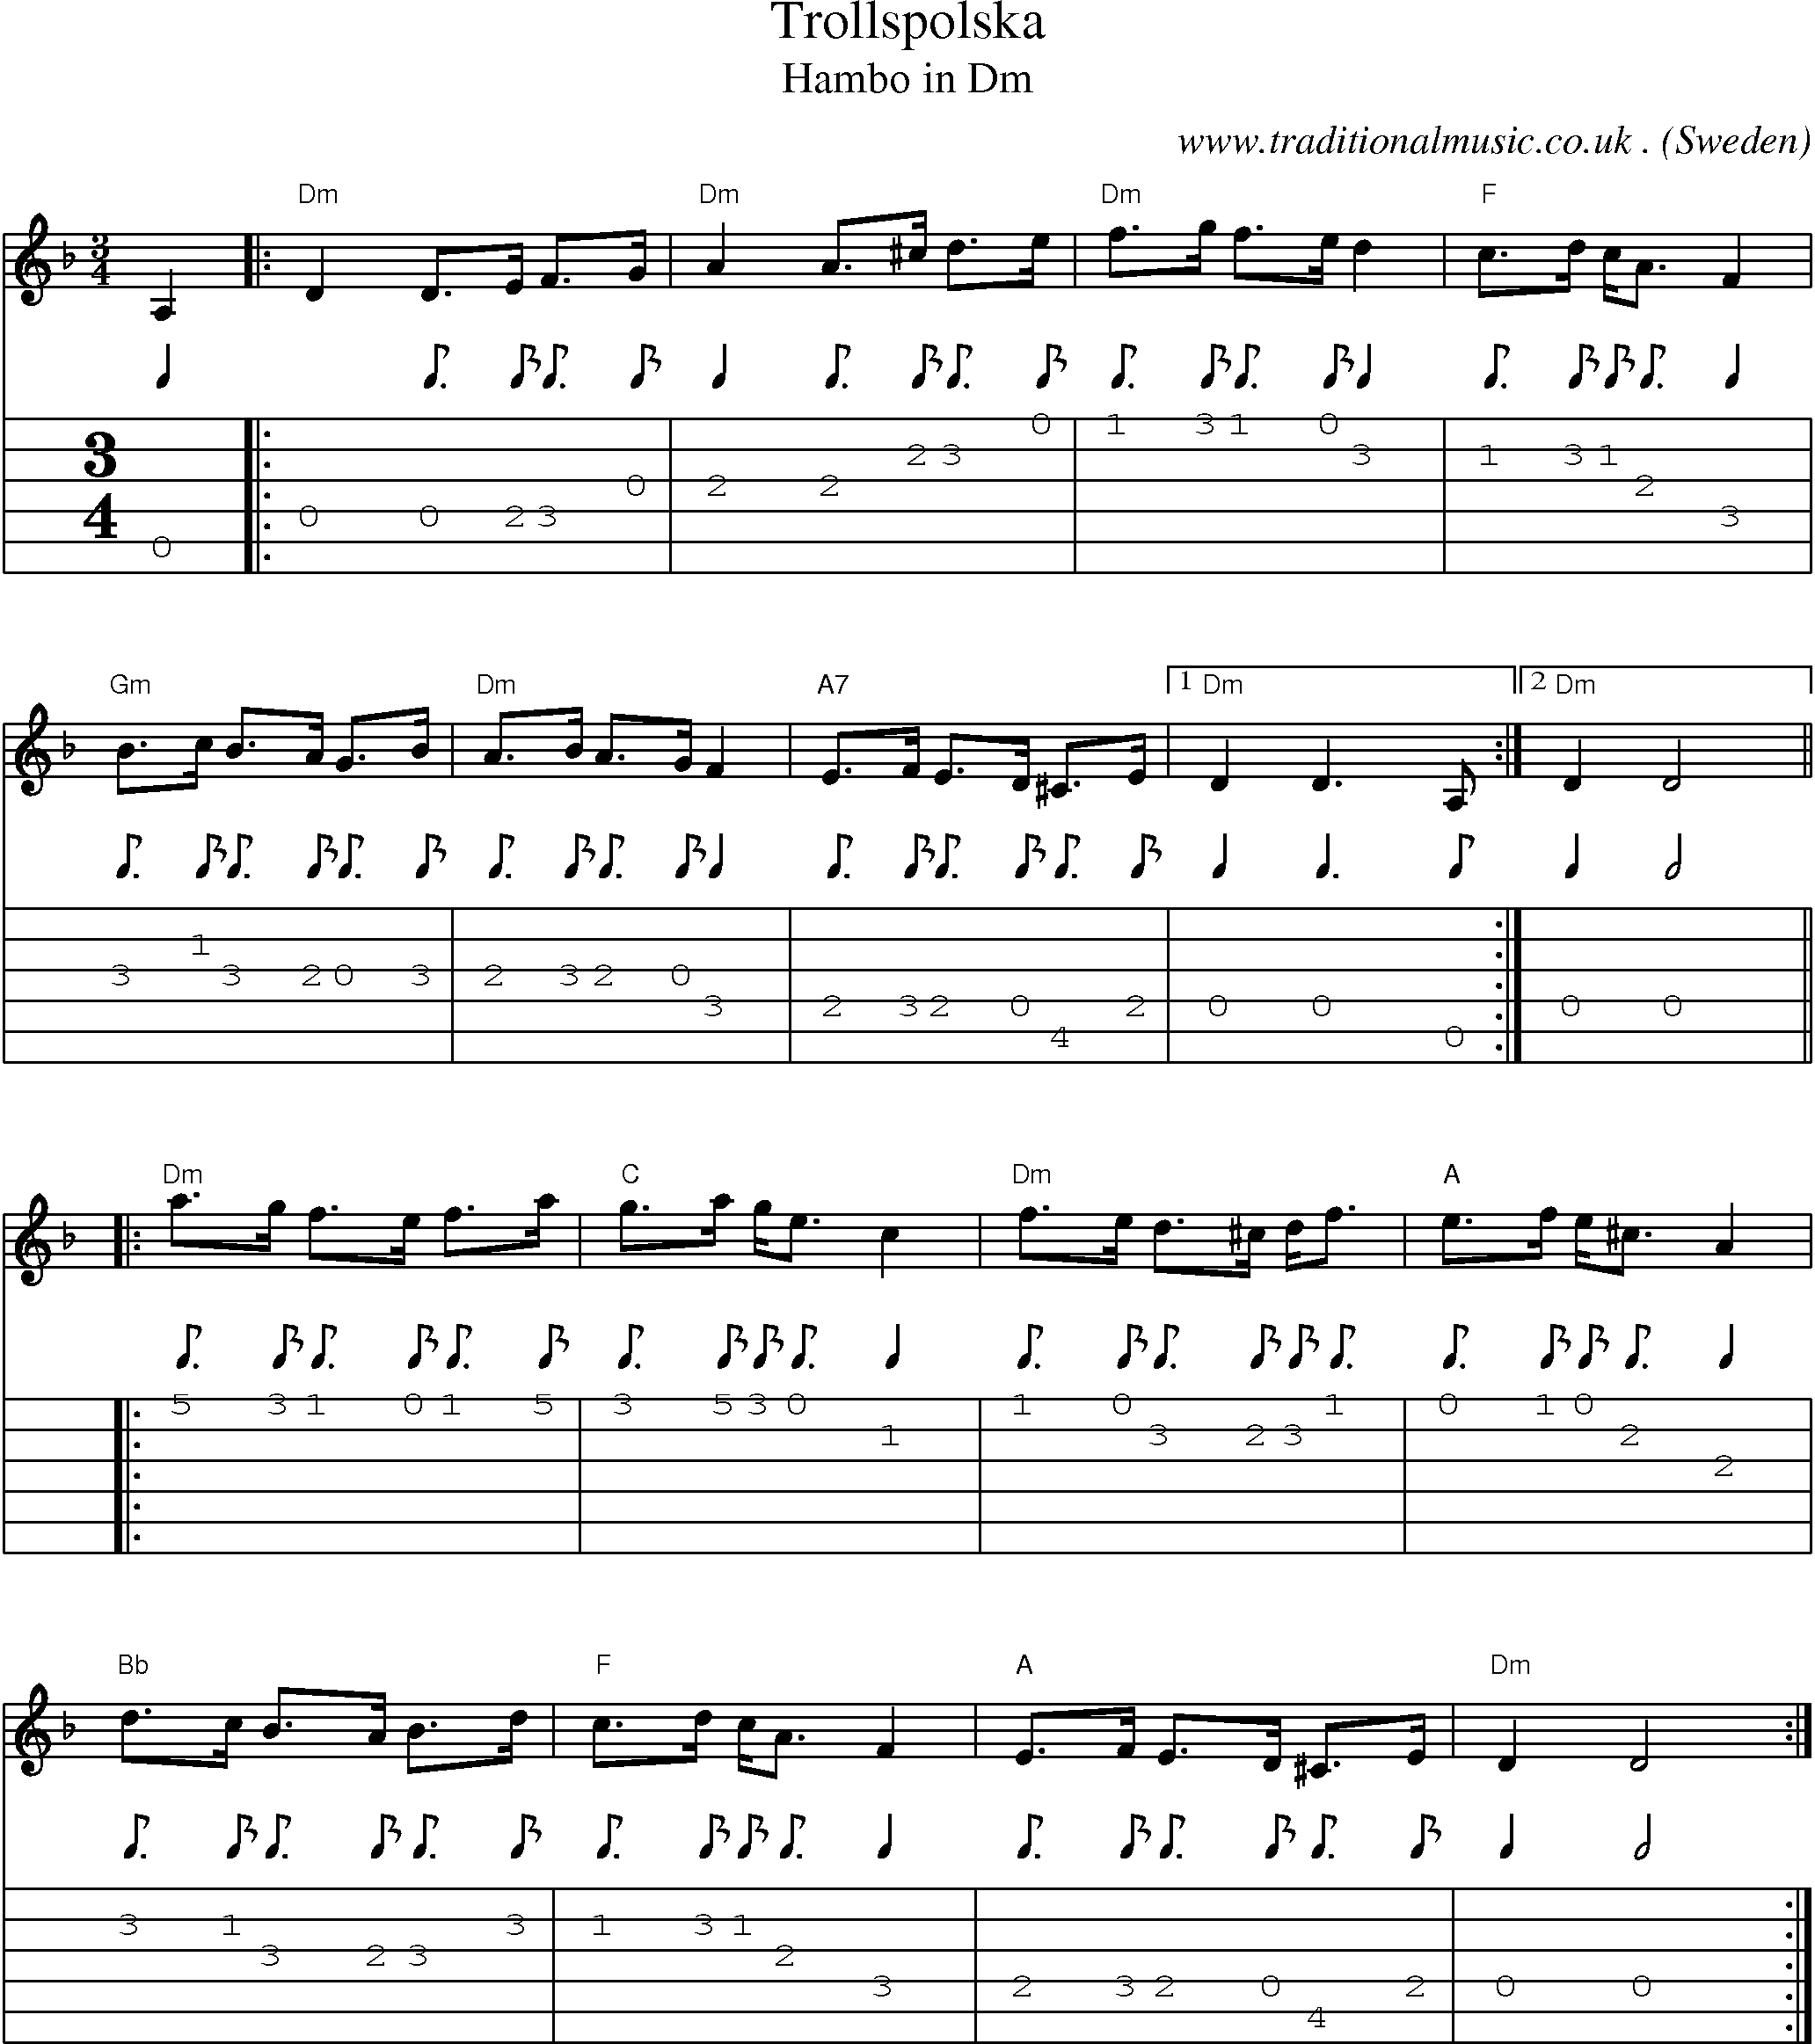 Music Score and Guitar Tabs for Trollspolska 